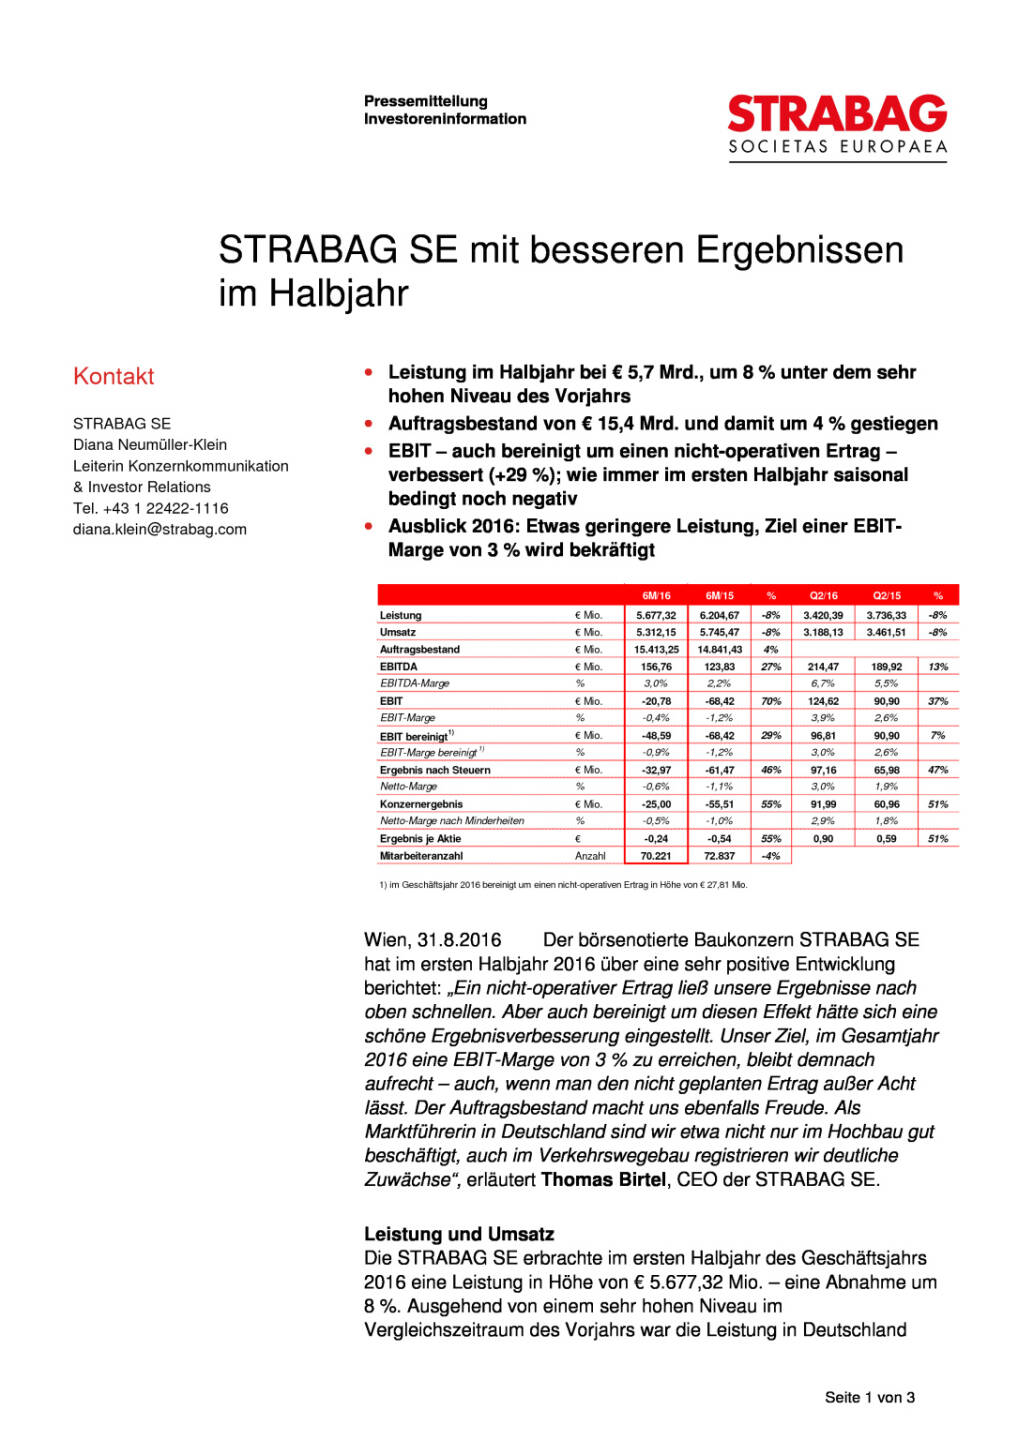 Strabag SE mit besseren Ergebnissen im Halbjahr, Seite 1/3, komplettes Dokument unter http://boerse-social.com/static/uploads/file_1691_strabag_se_mit_besseren_ergebnissen_im_halbjahr.pdf